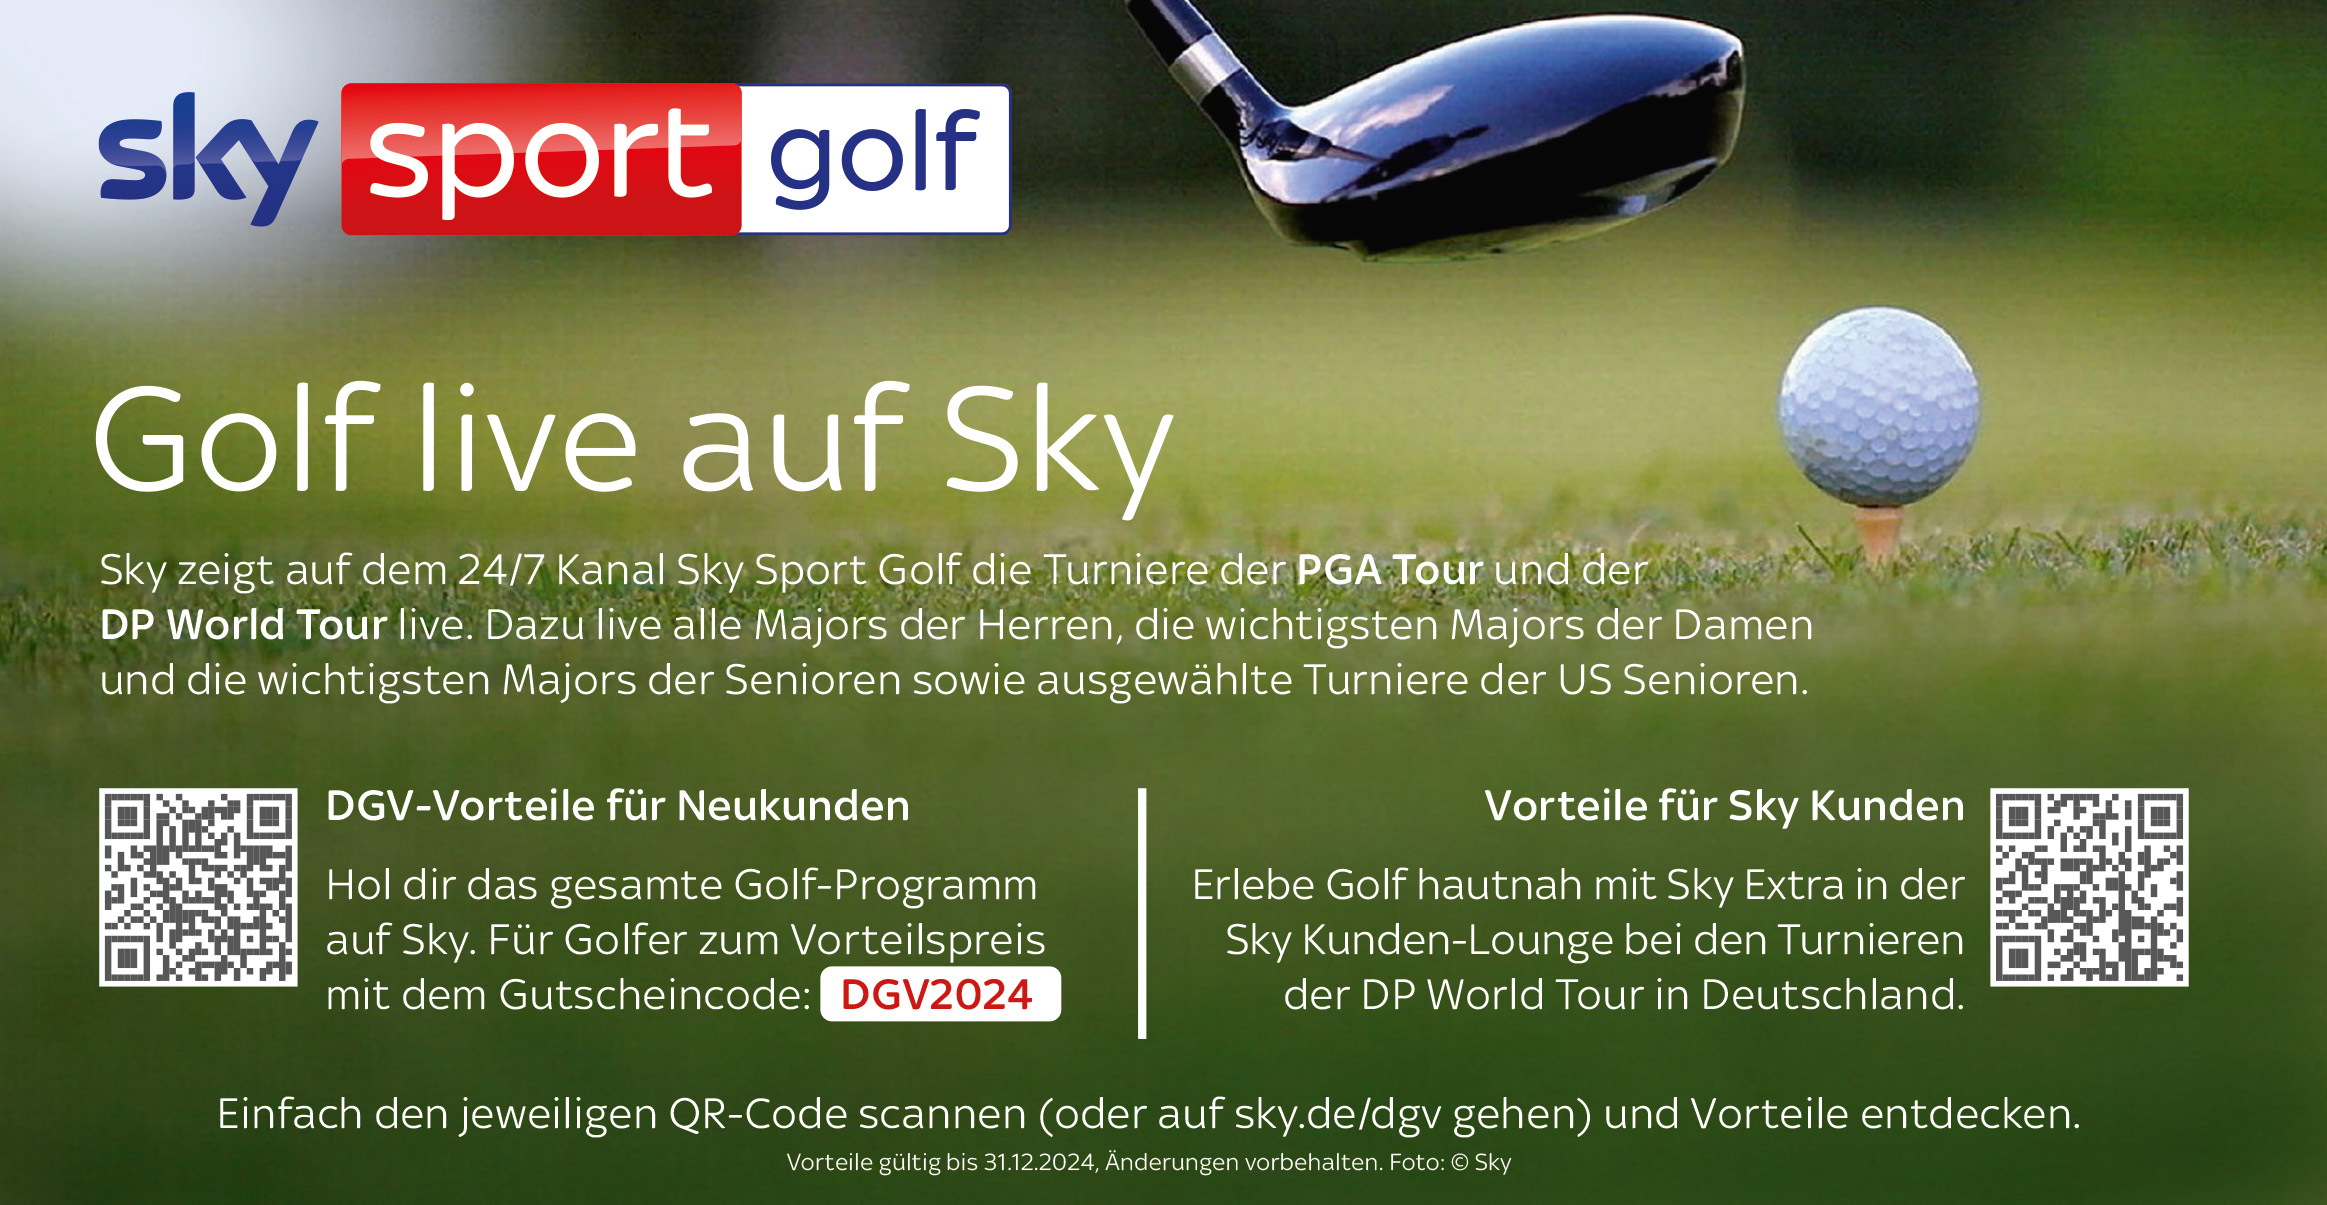 Golf live auf Sky - Für Neukunden mit dem Code DGV2024